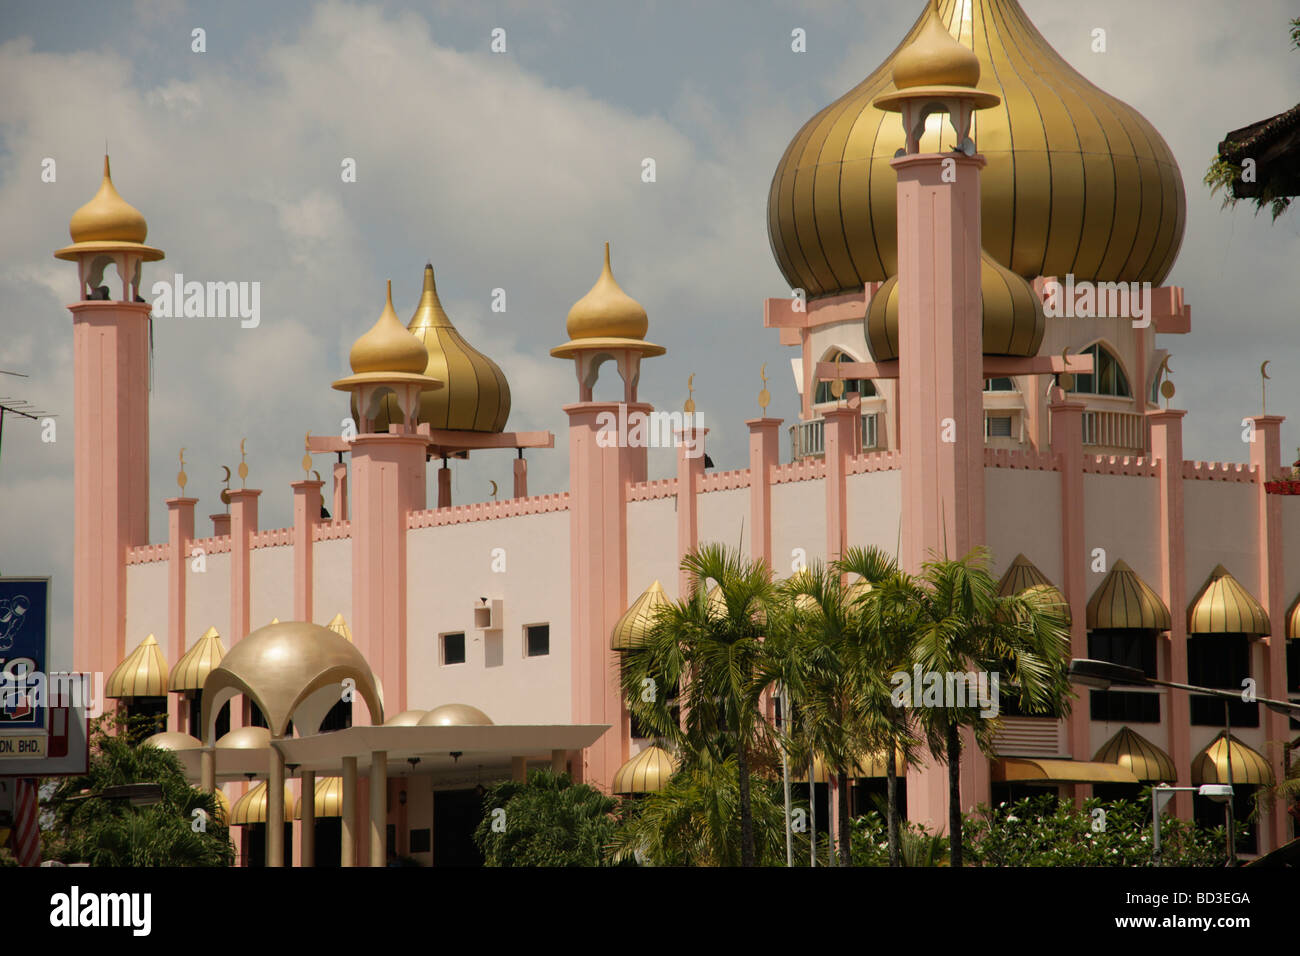 Mosquée de Sarawak Kuching Bornéo Malaisie Asie du sud-est Banque D'Images